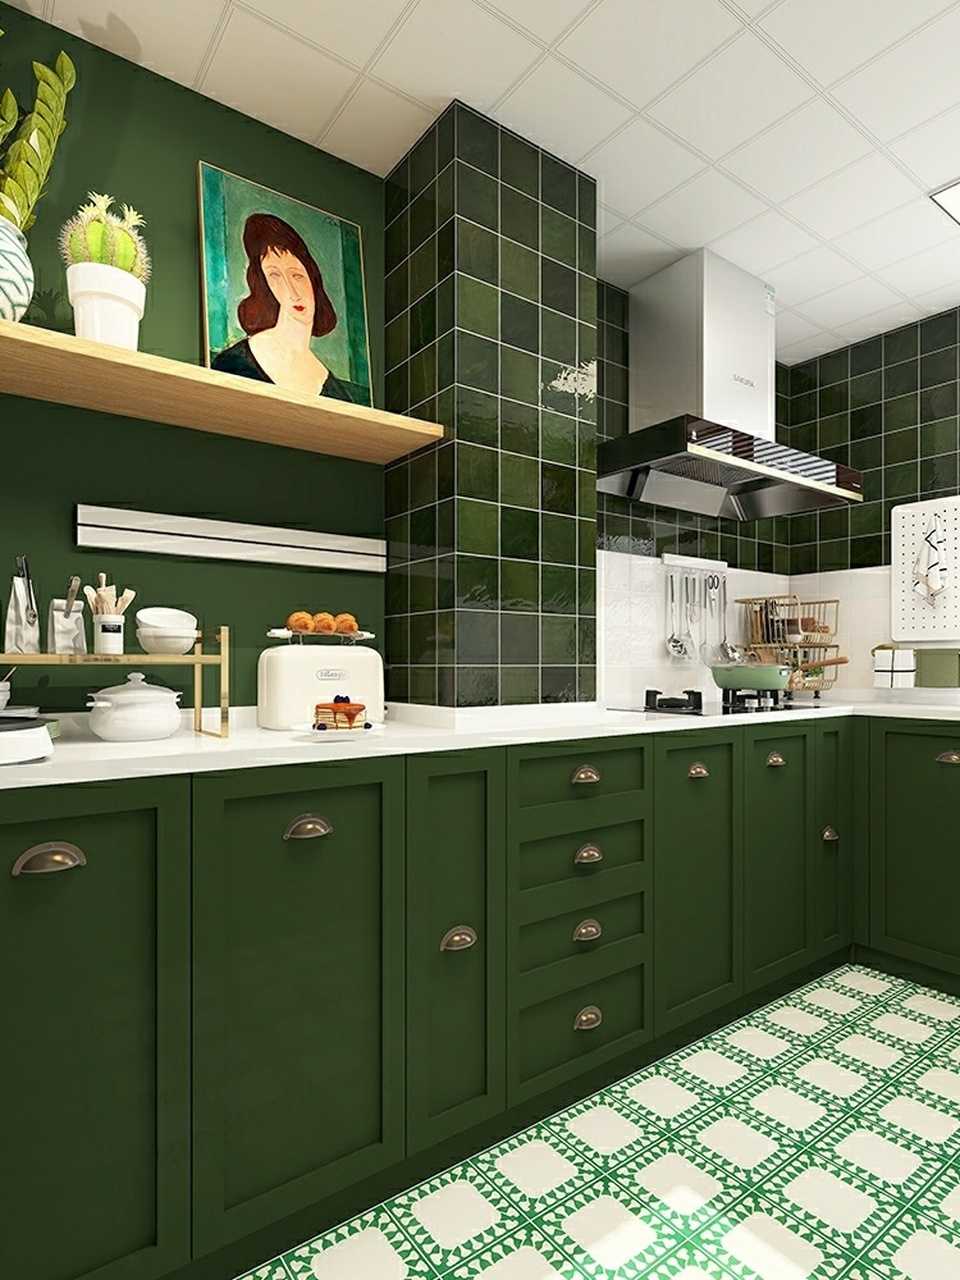 绿色 白色的经典搭配,再加上一点金属色点缀,既复古又摩登,精致的厨房